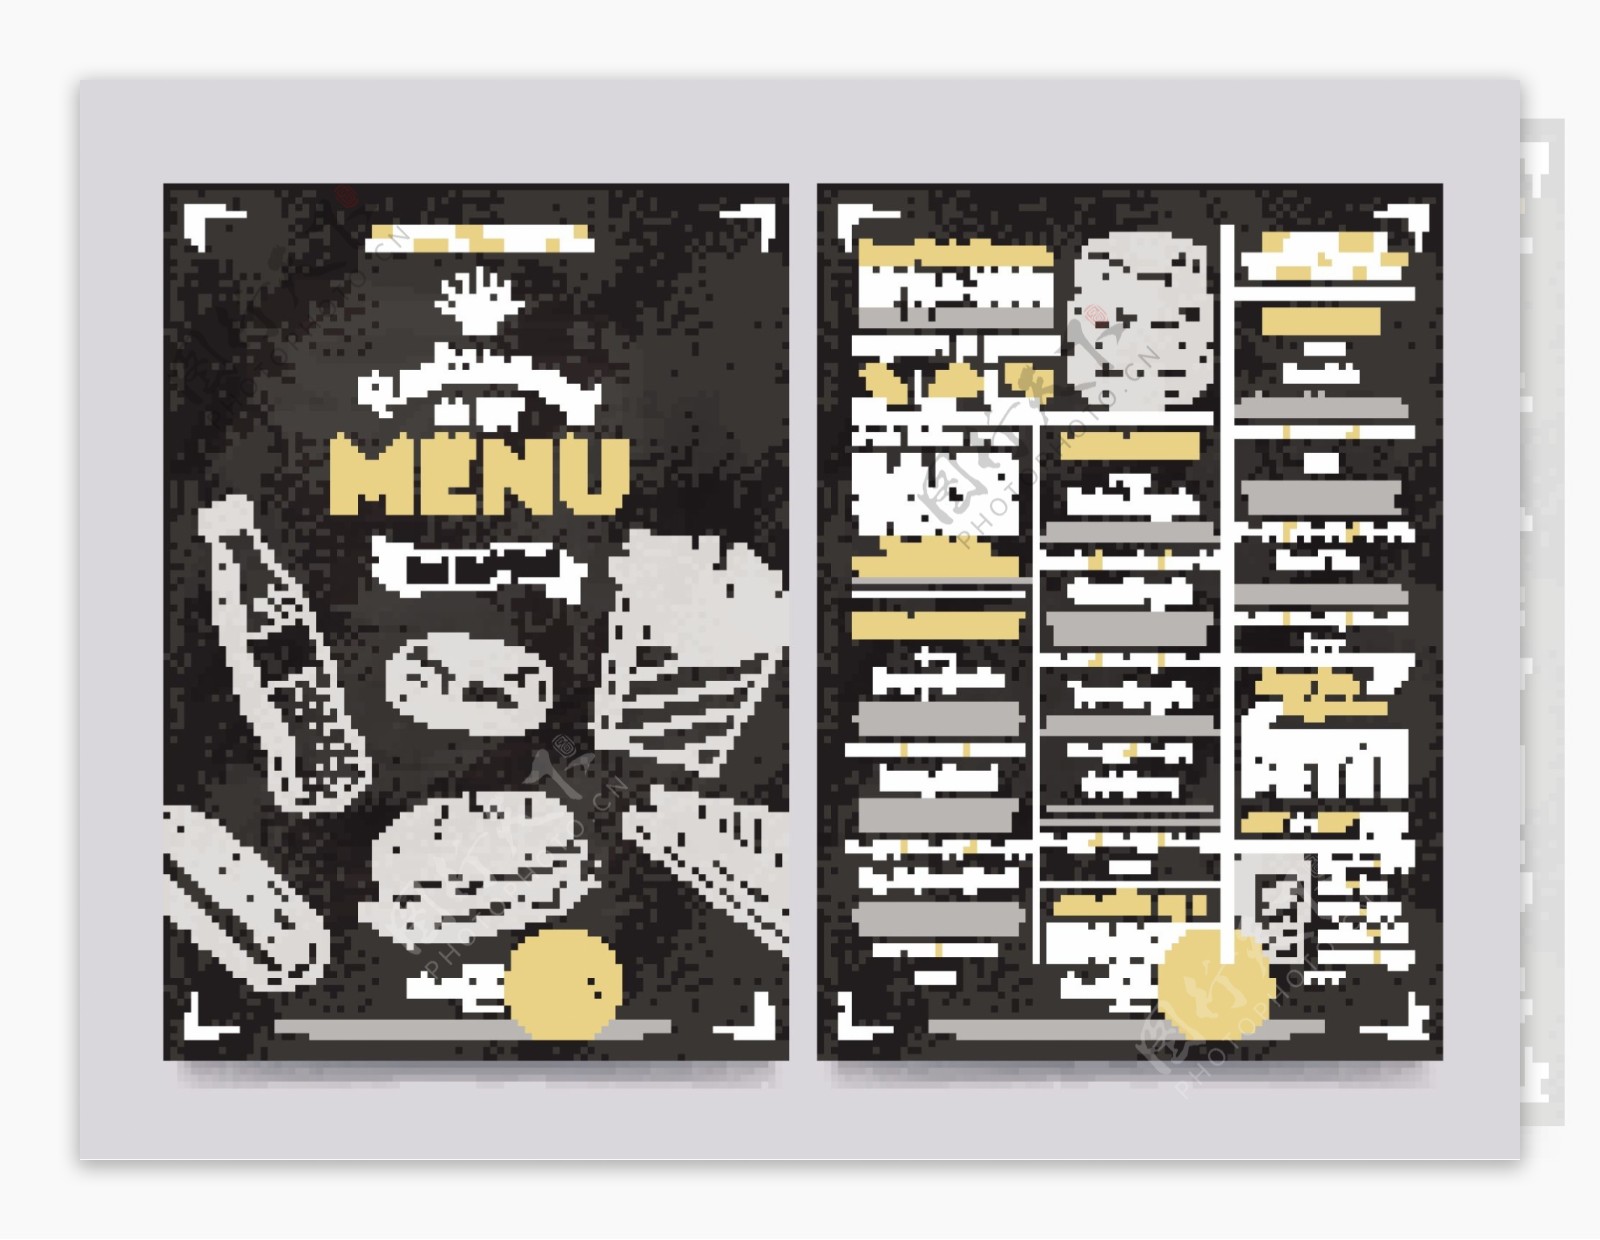 简约时尚快餐类矢量餐厅菜单设计素材EPS